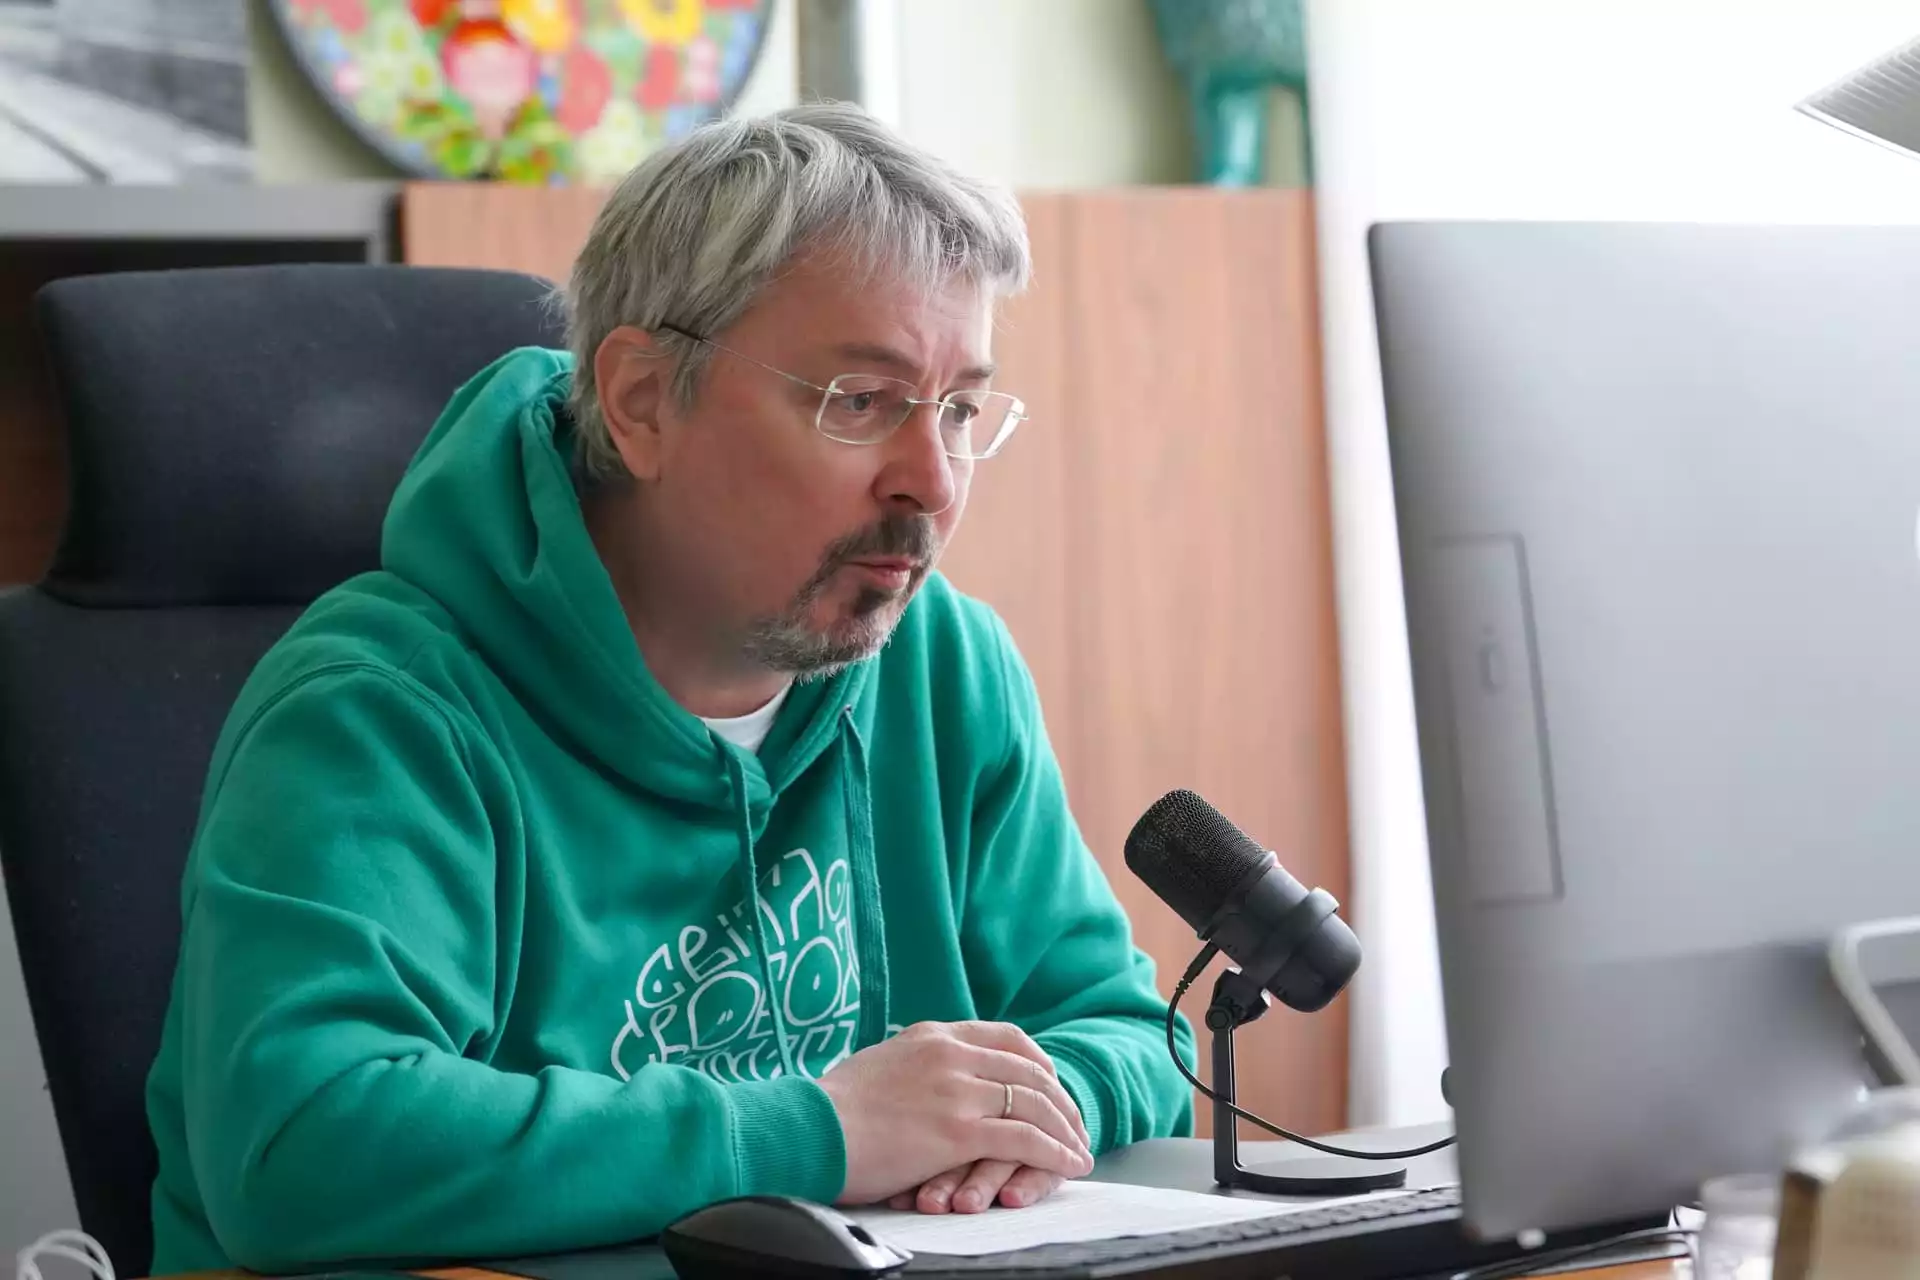 Олександр Ткаченко про Telegram: «Не говорив би про заборону, а радше про певне регулювання»